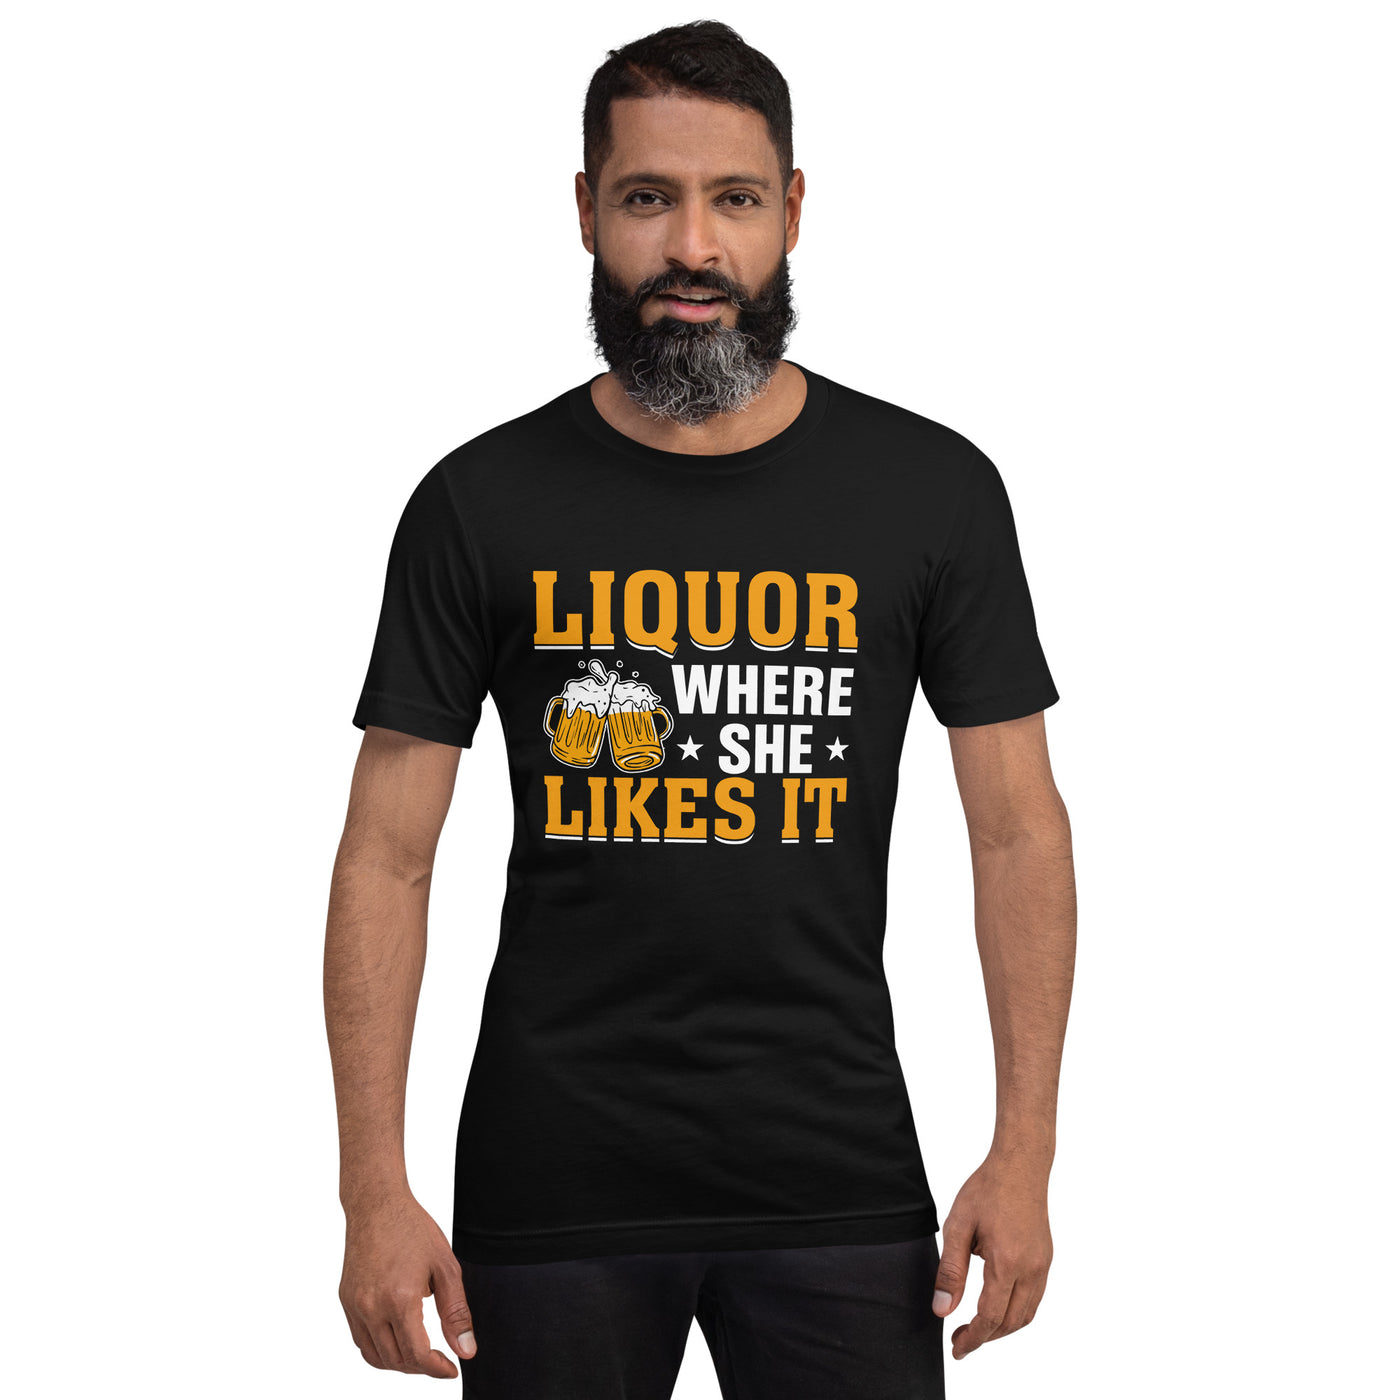 Liquor where she likes it - Unisex t-shirt